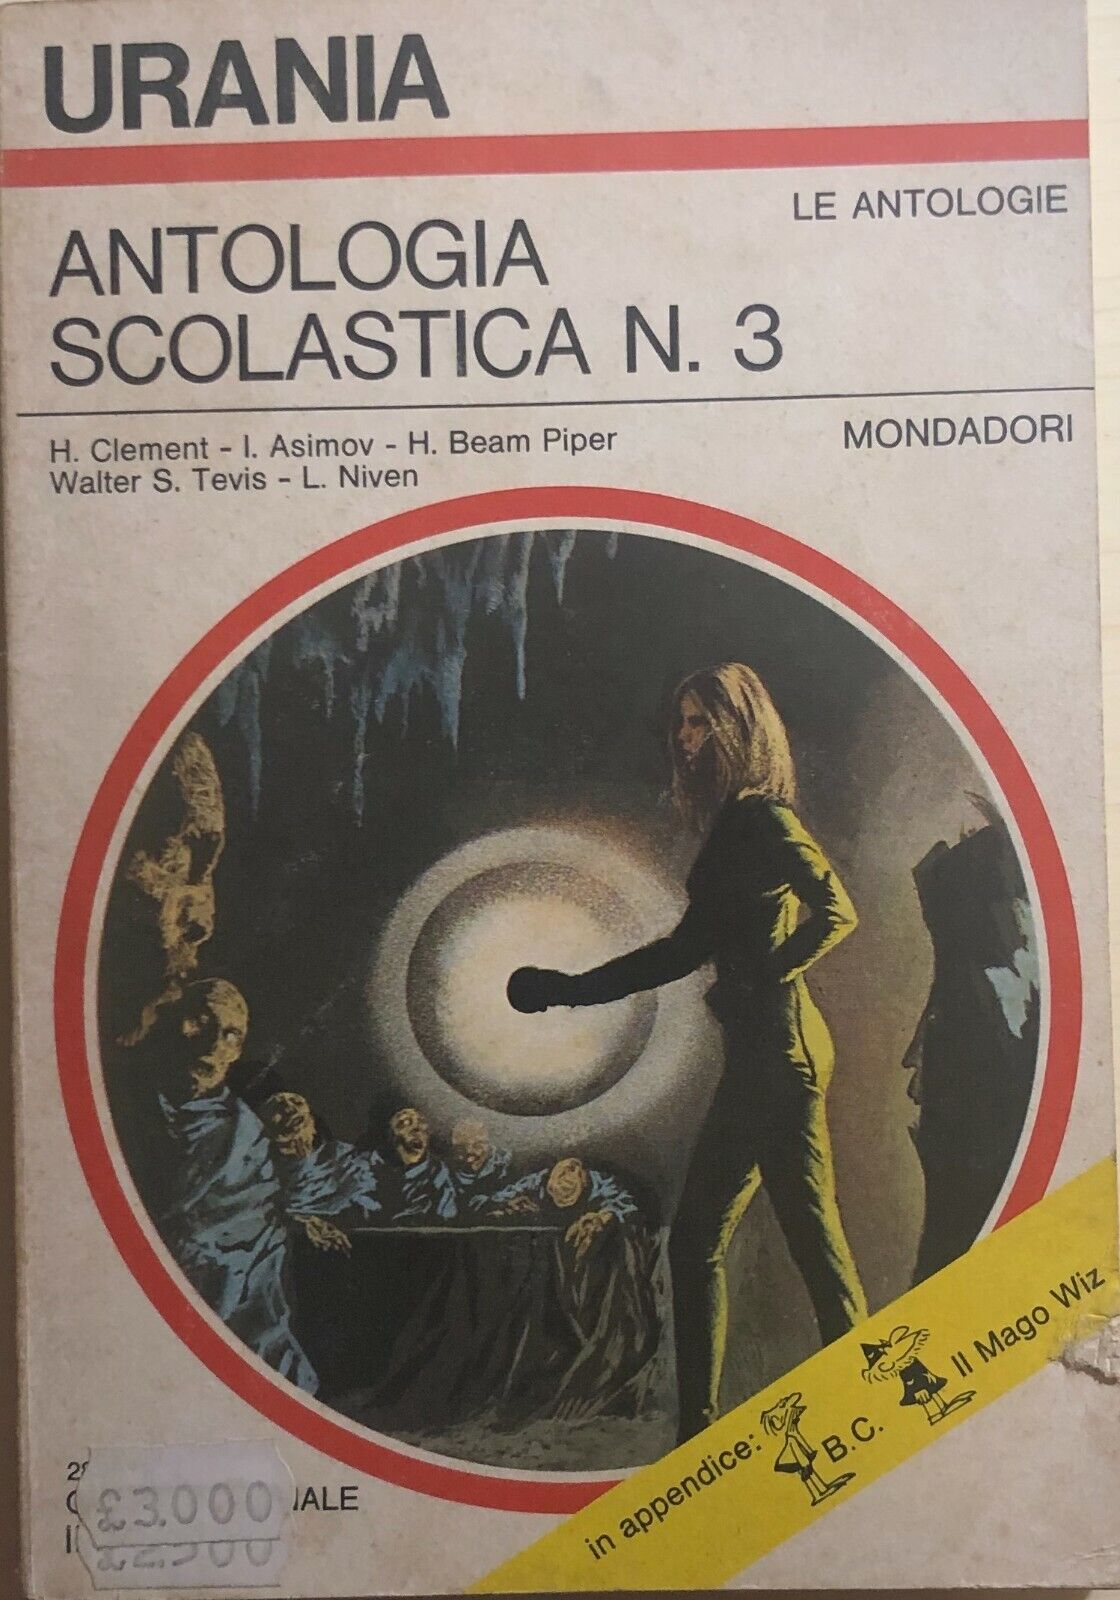 Antologia scolastica nr. 3 di Aa.vv., 1971, Mondadori